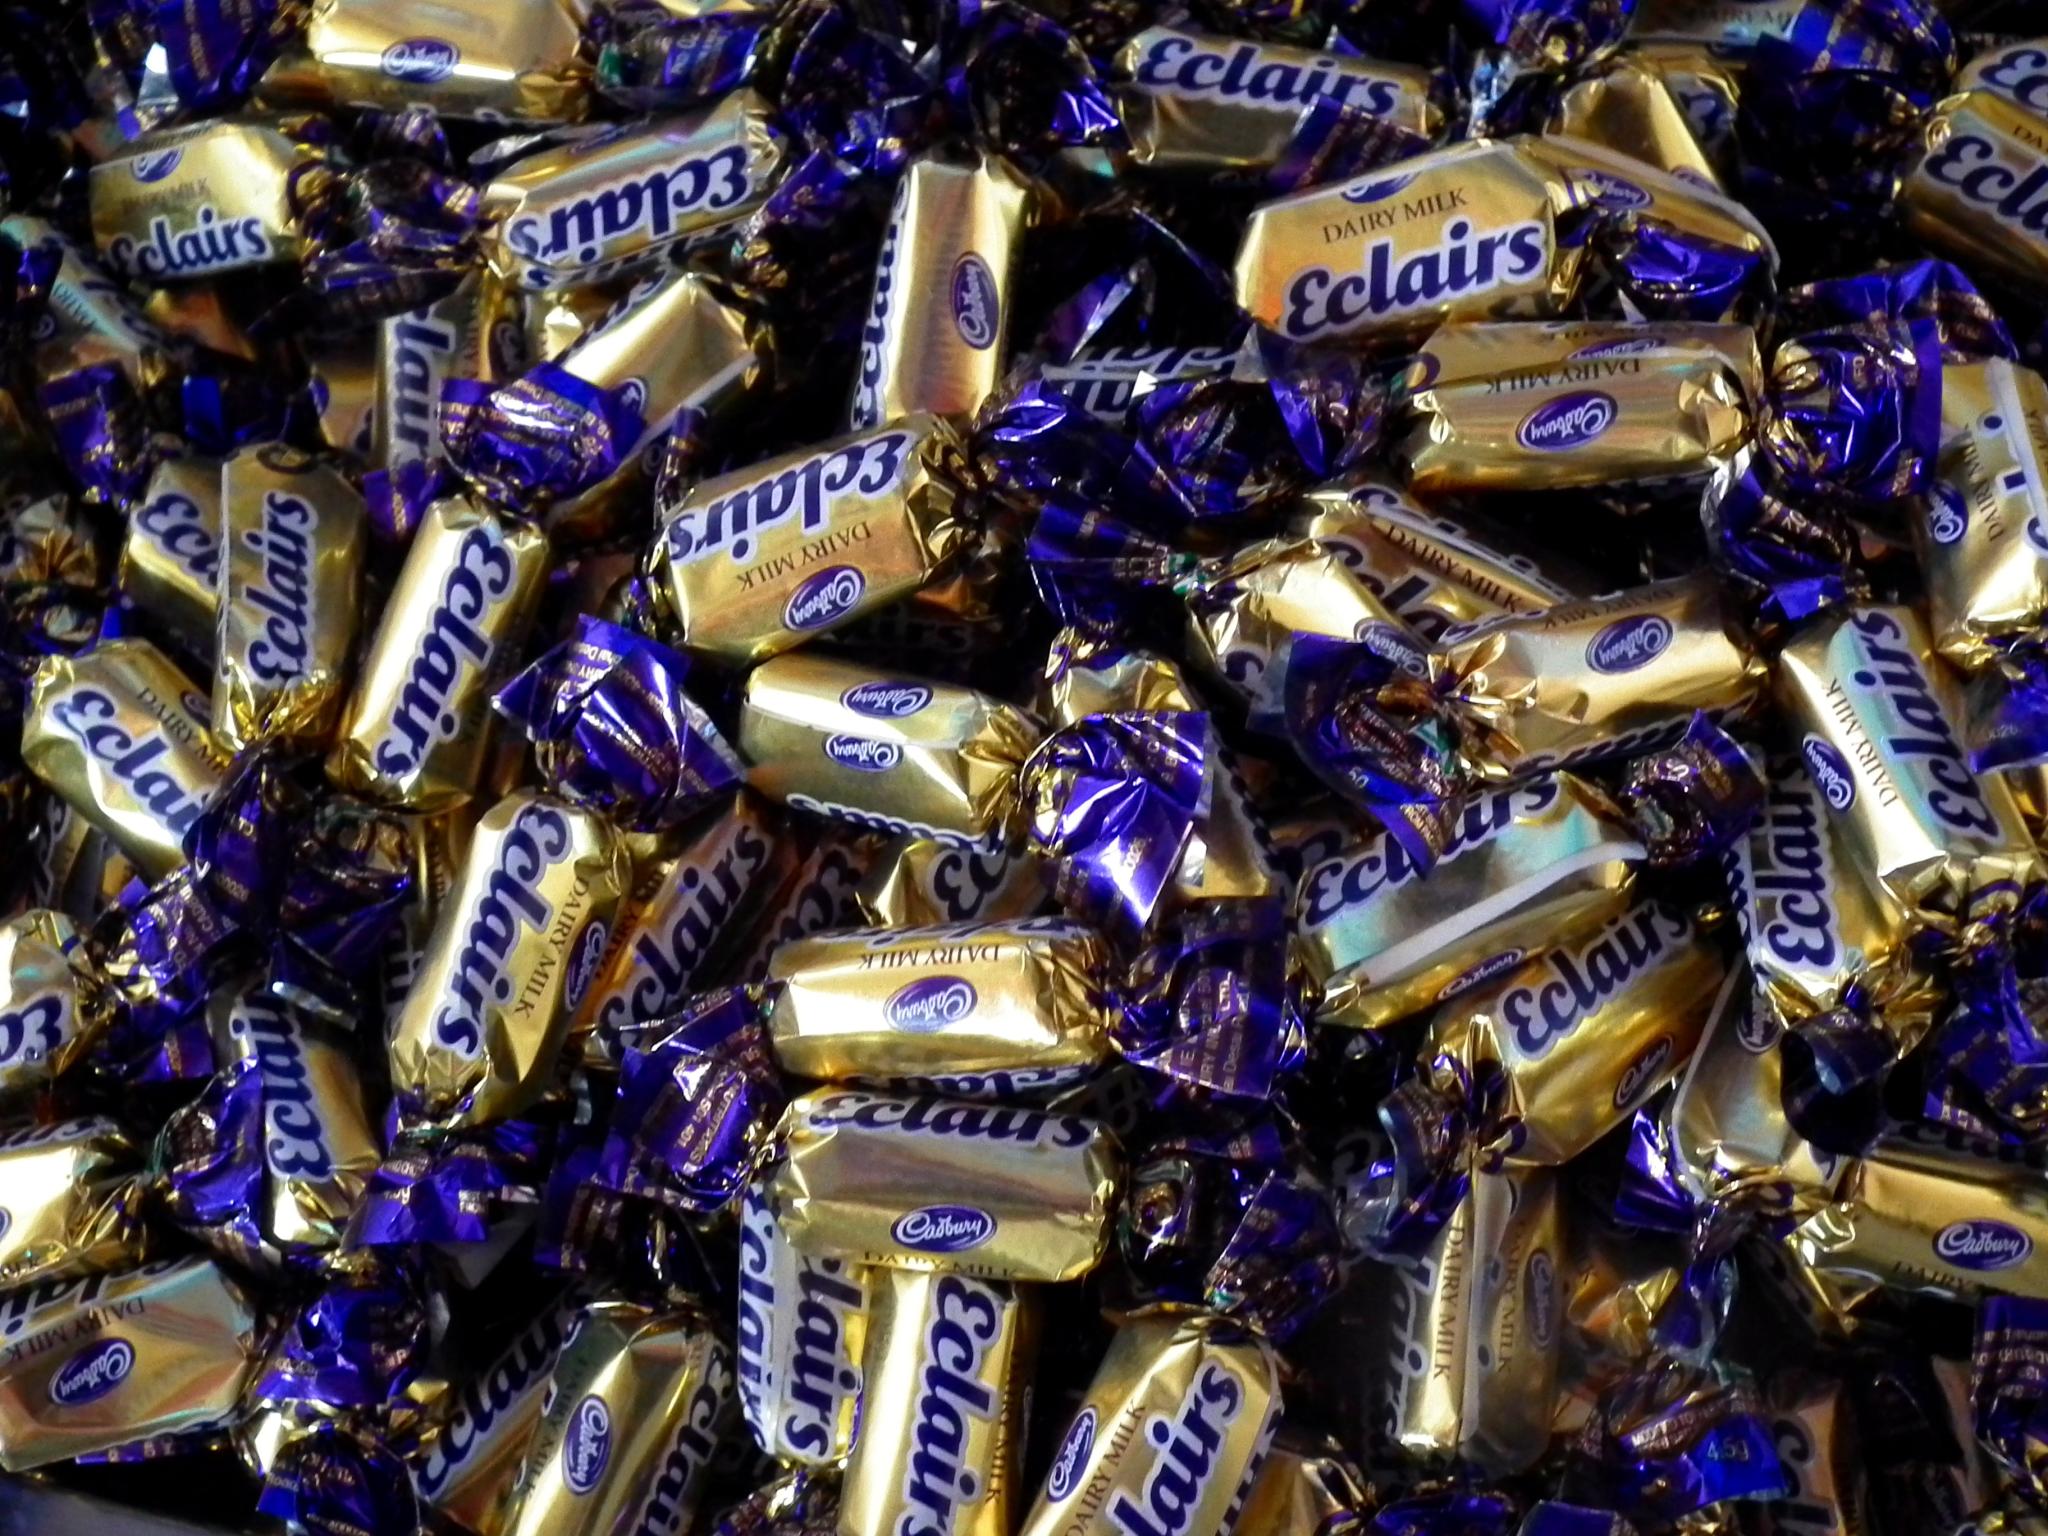 Cadbury Eclairs
